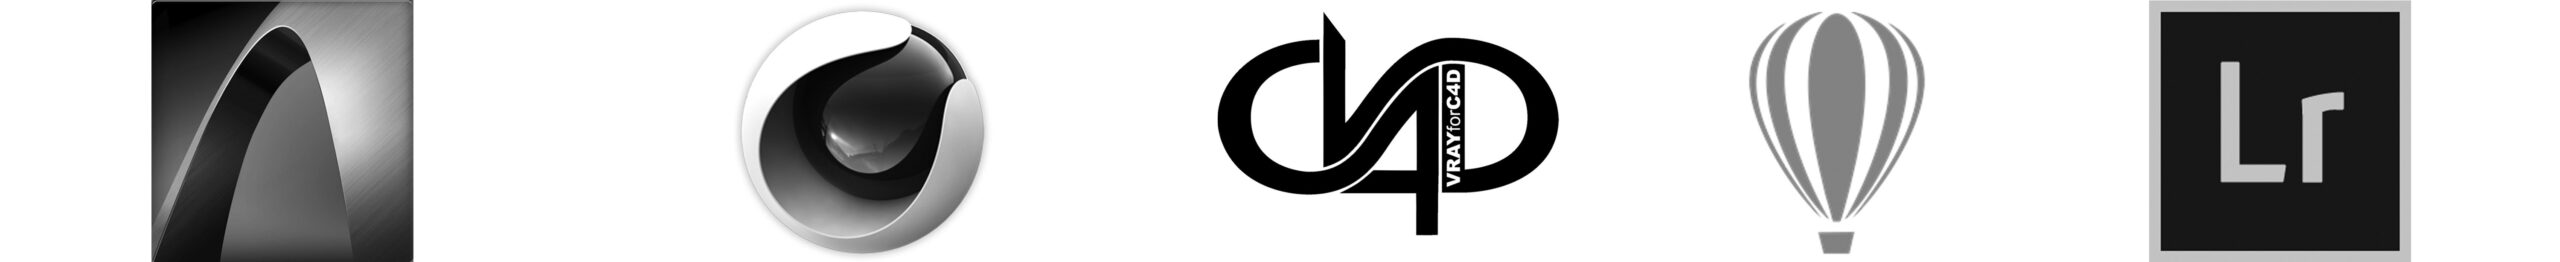 Pasek logotypy oprogramowanie architektoniczne